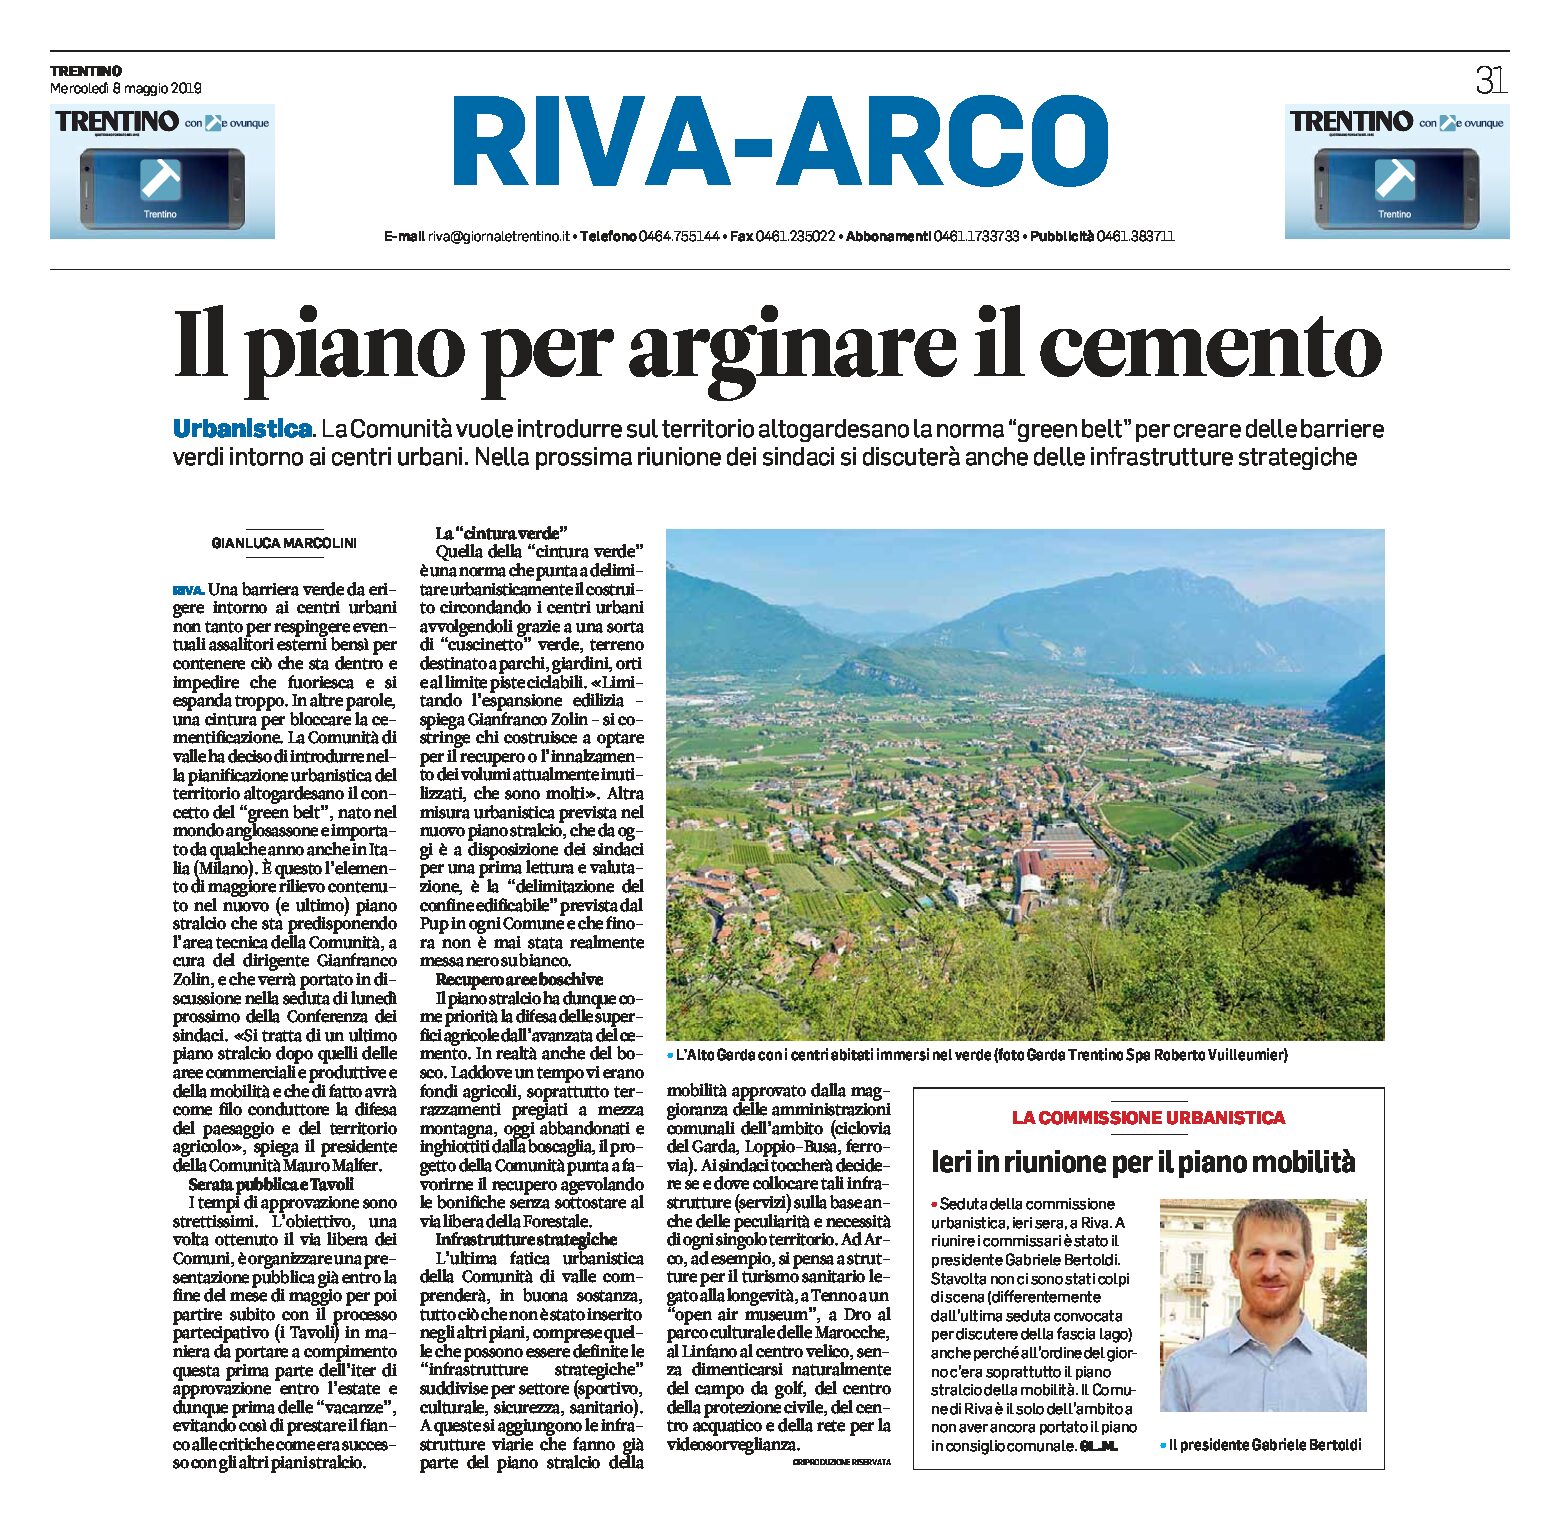 Riva-Arco: il piano per arginare il cemento